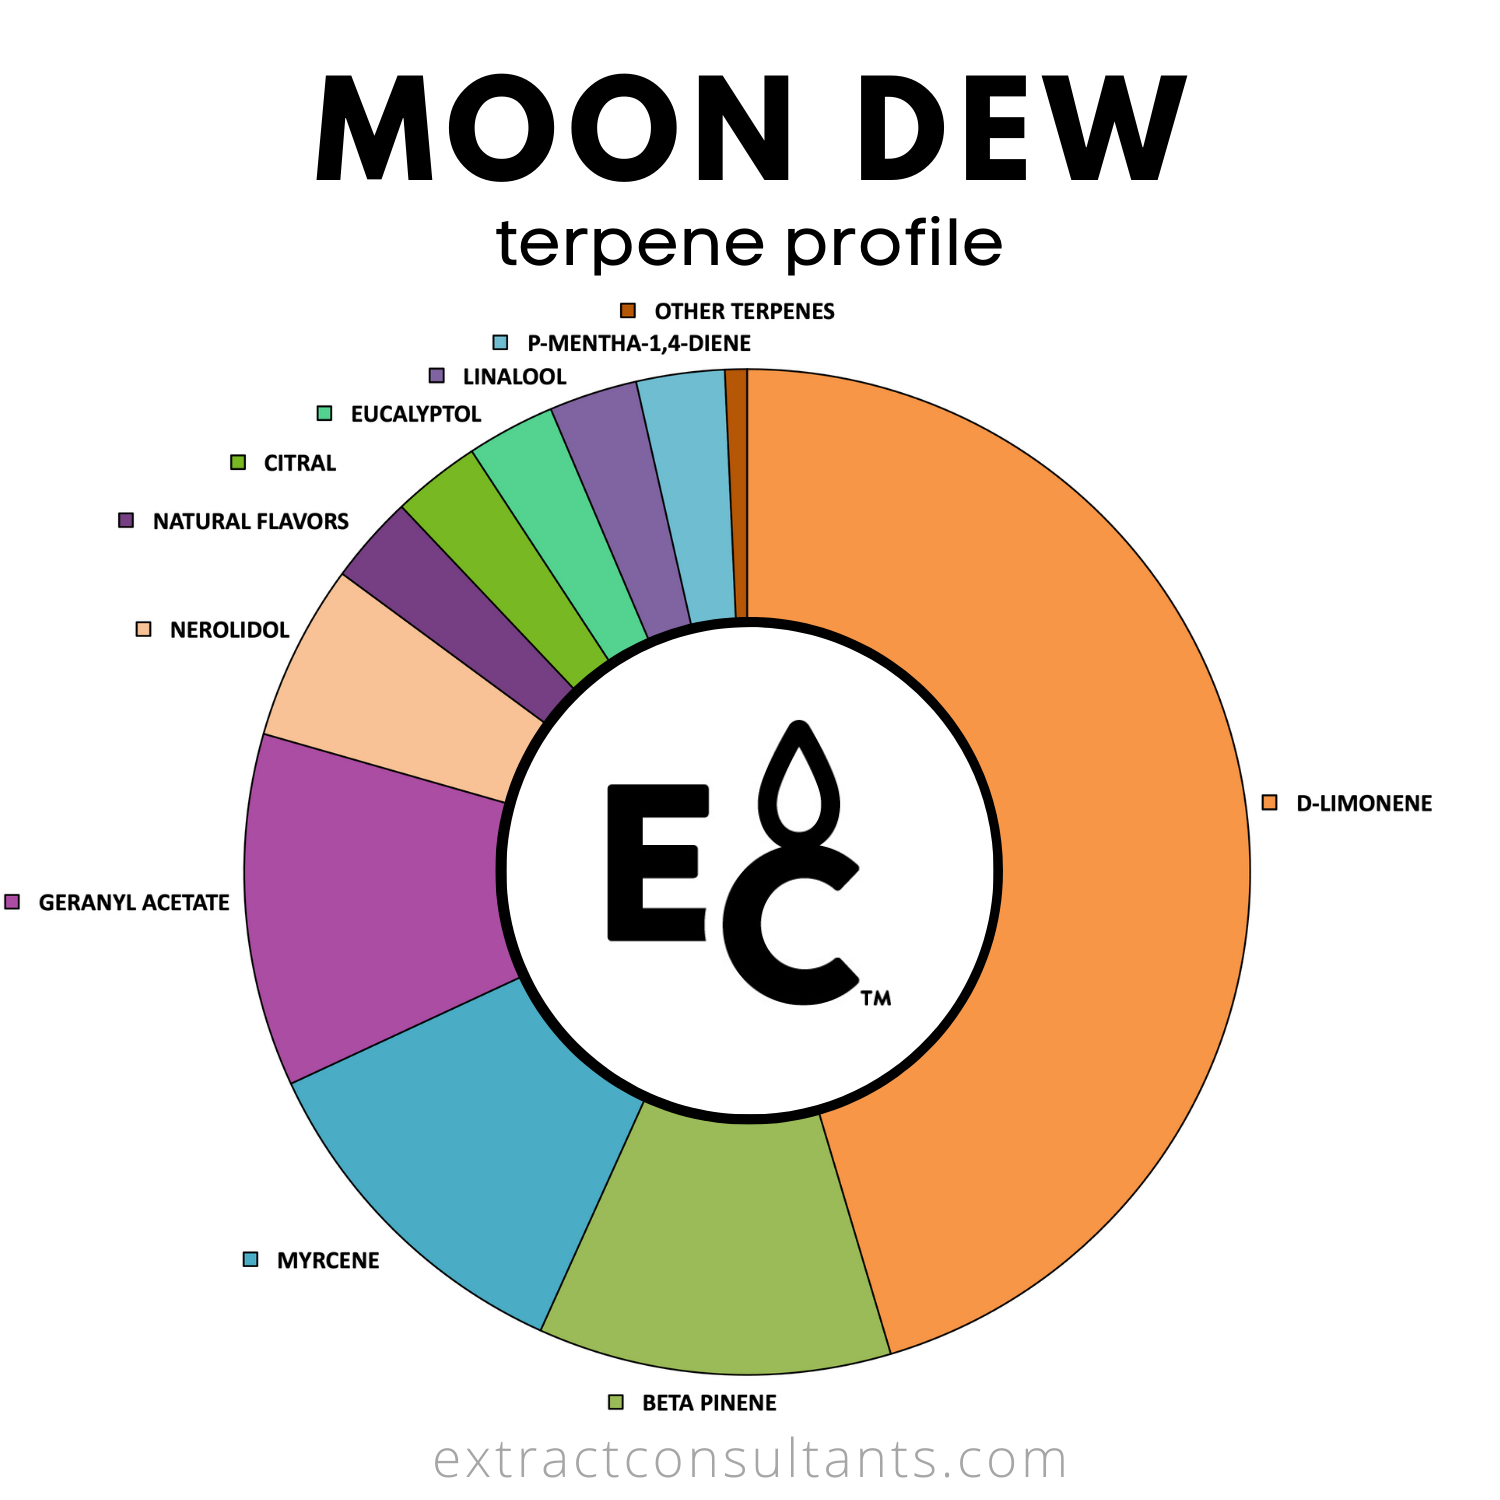 Moon Dew Solvent Free Terpene Flavor